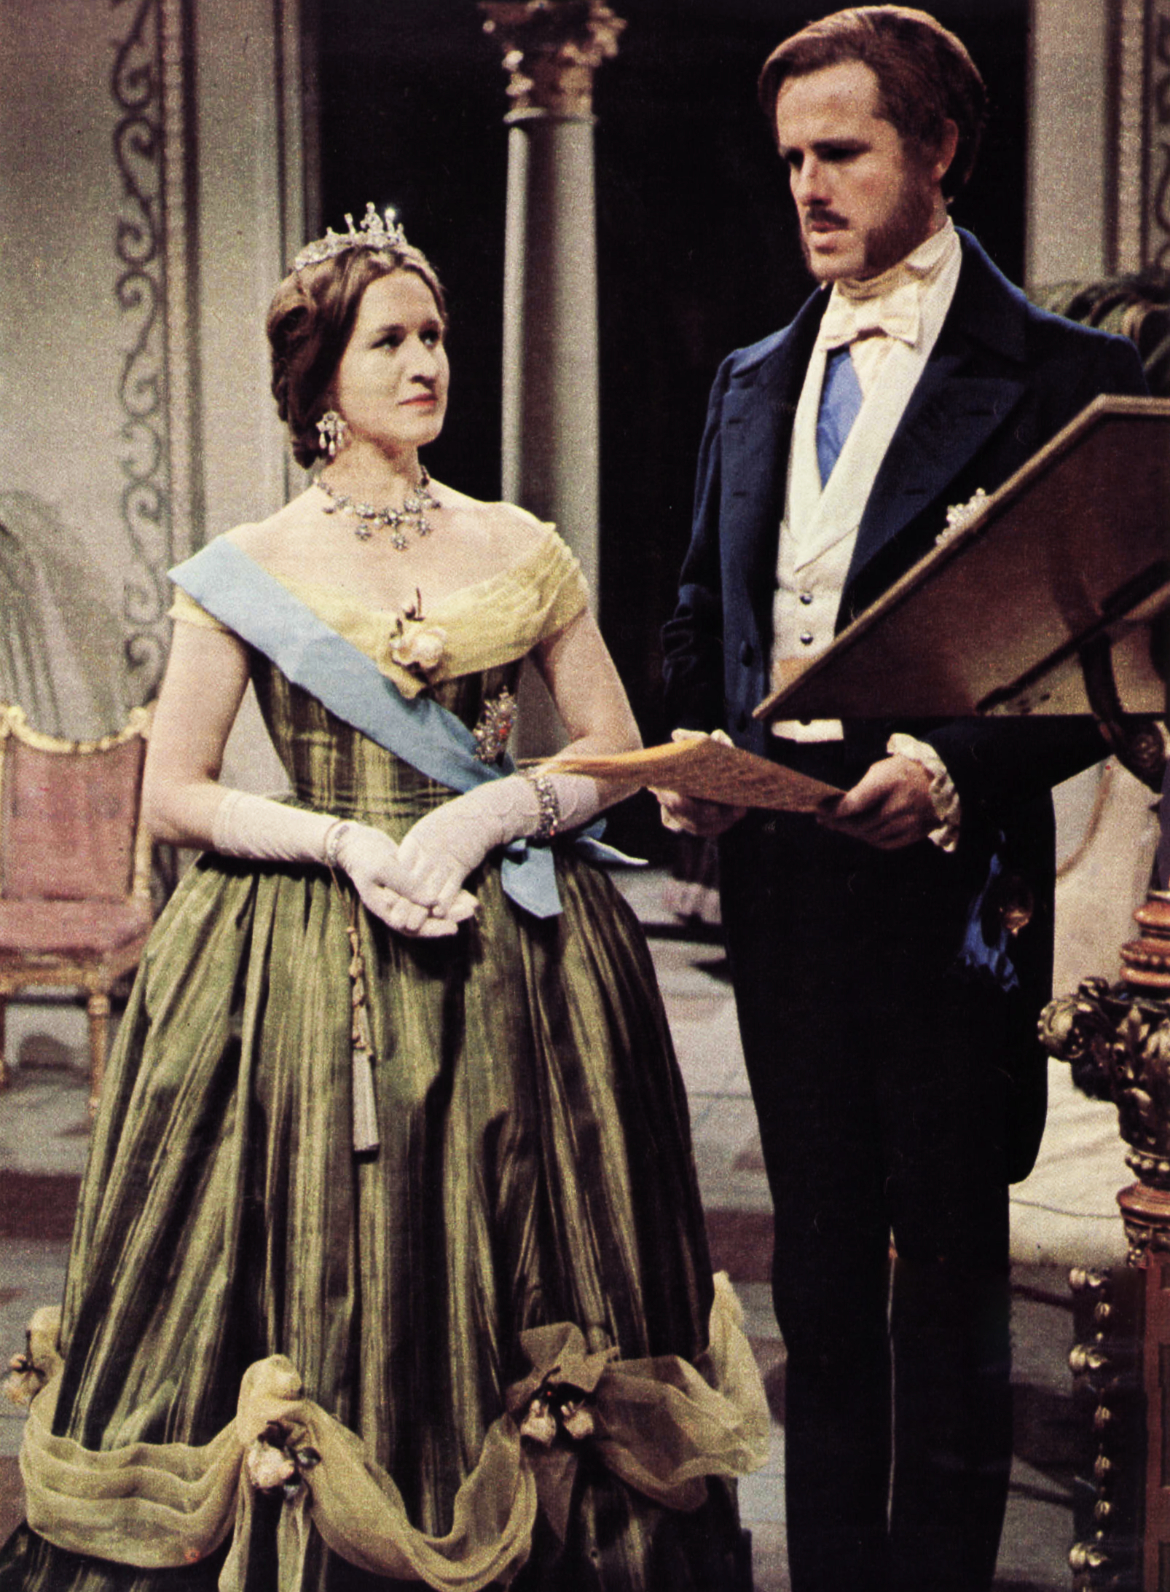 Patricia Routledge as Queen Victoria and Joachim Hansen as Albert